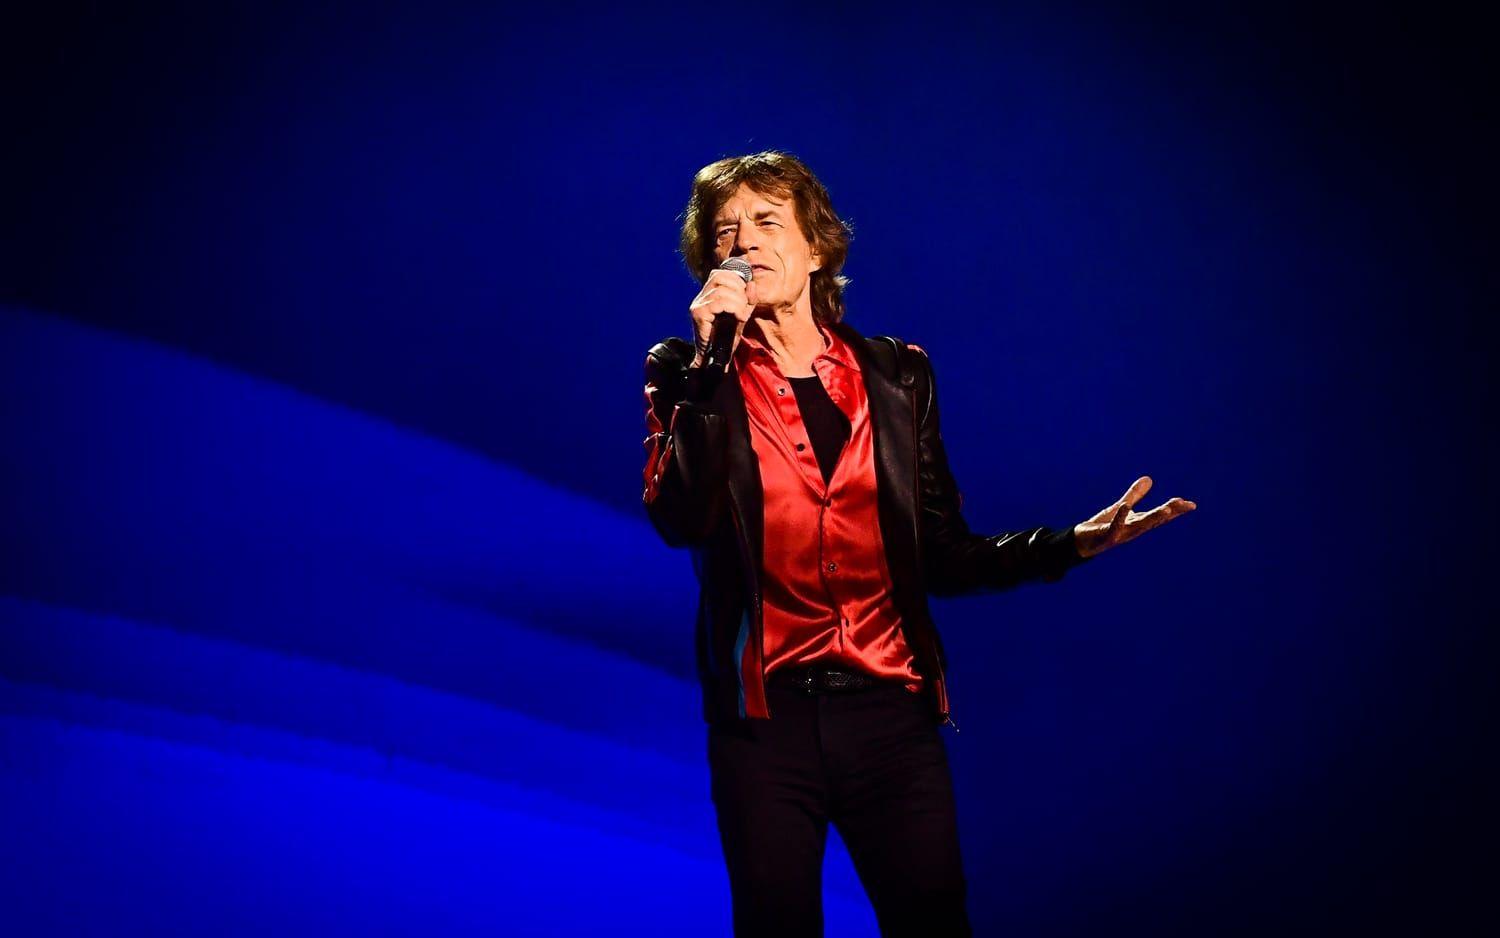 Mick Jagger, sångare i The Rolling Stones konstaterar som många andra att drottningen funnits med under hela hans liv.